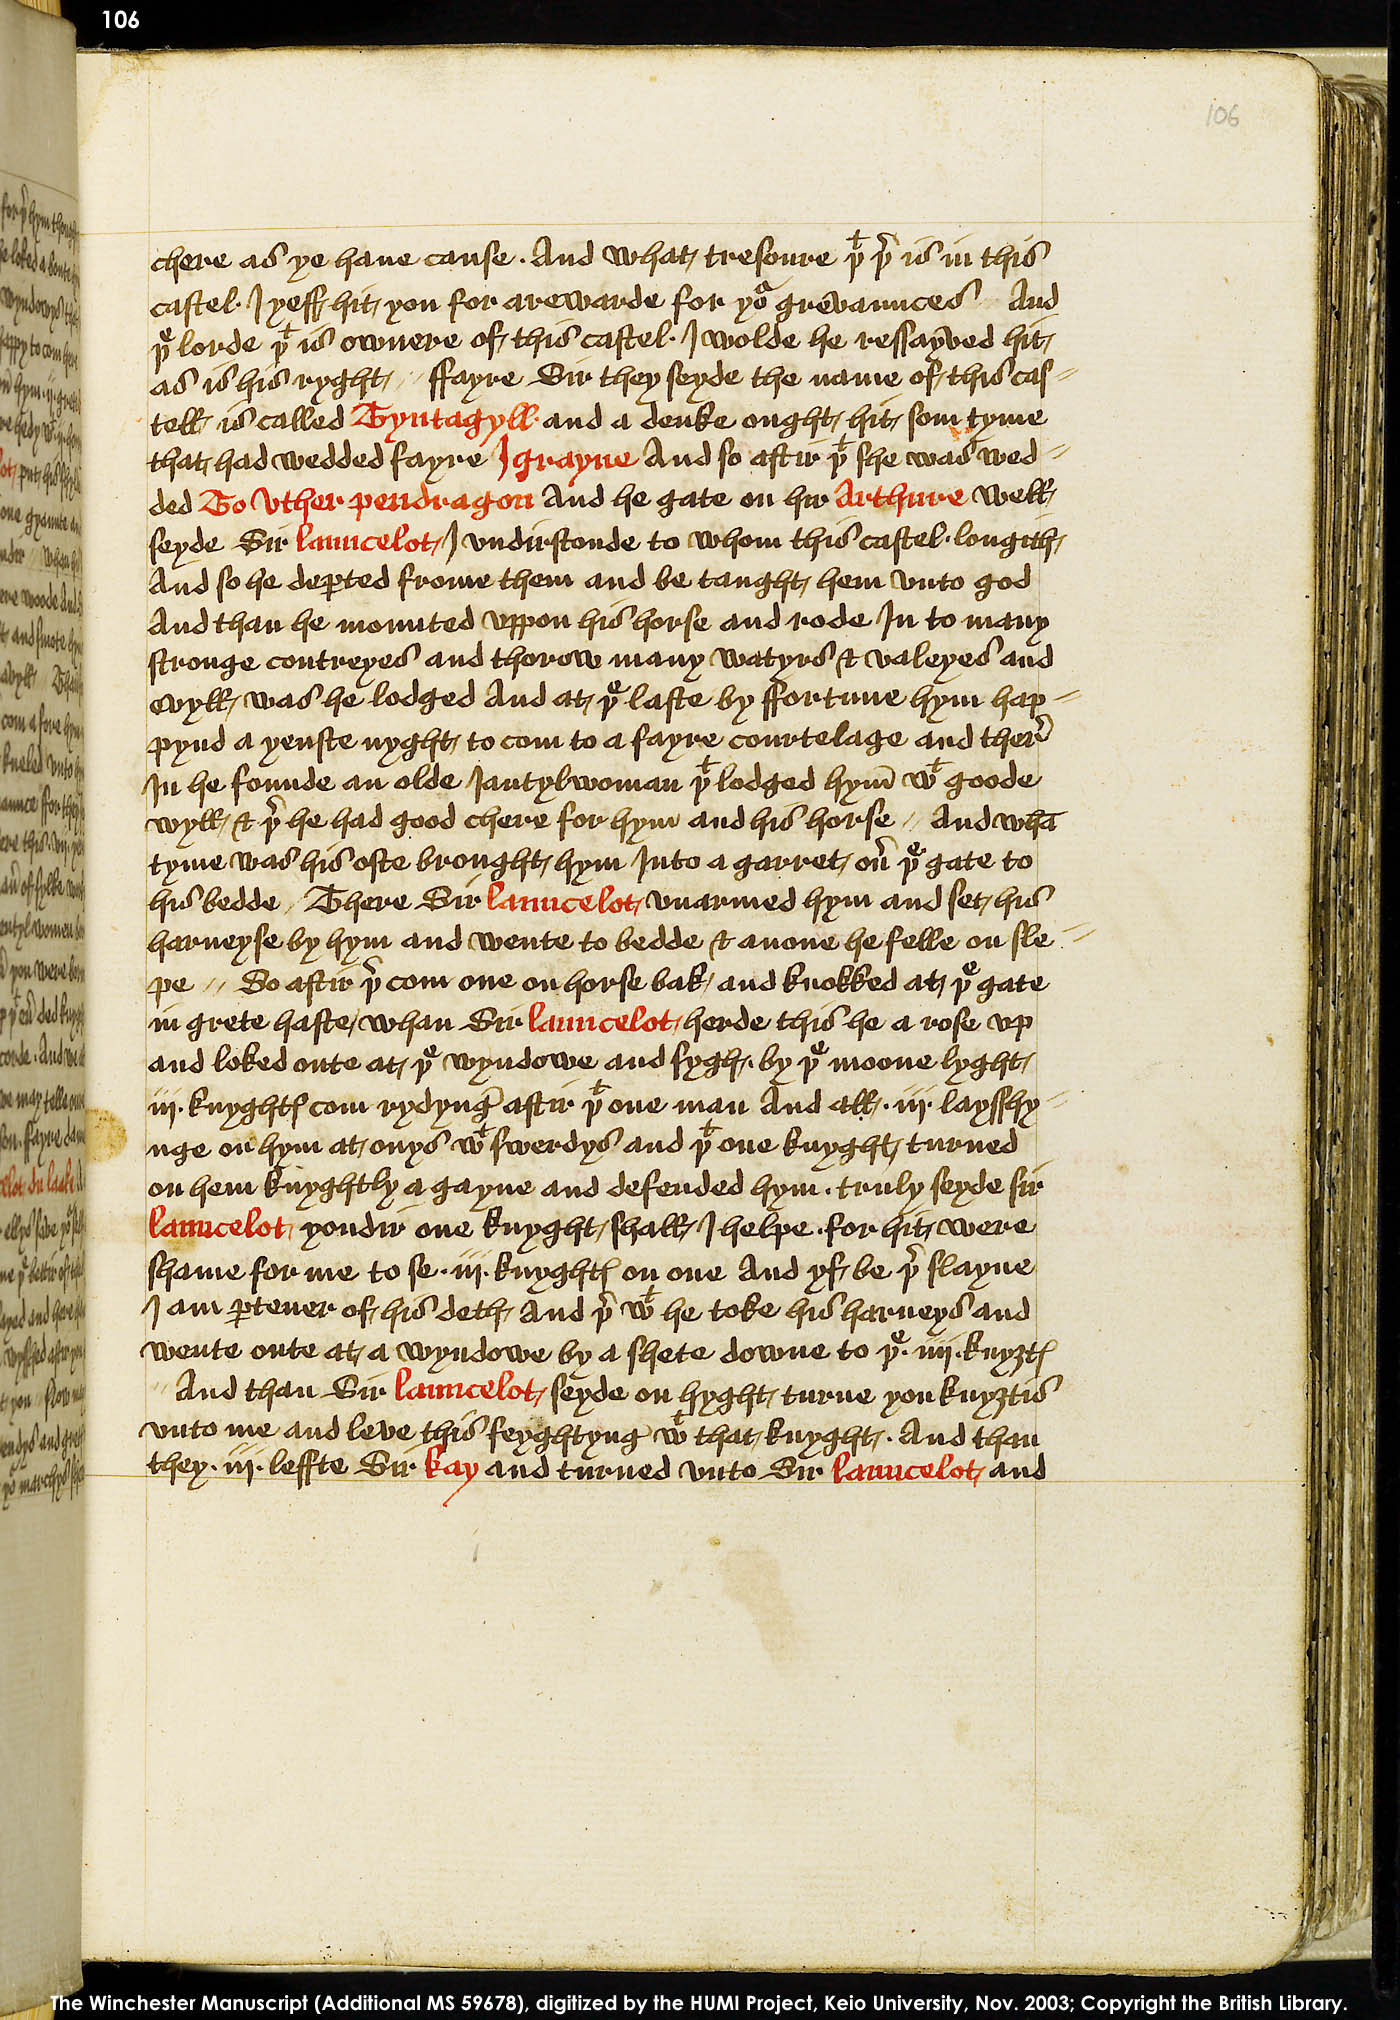 Folio 106r